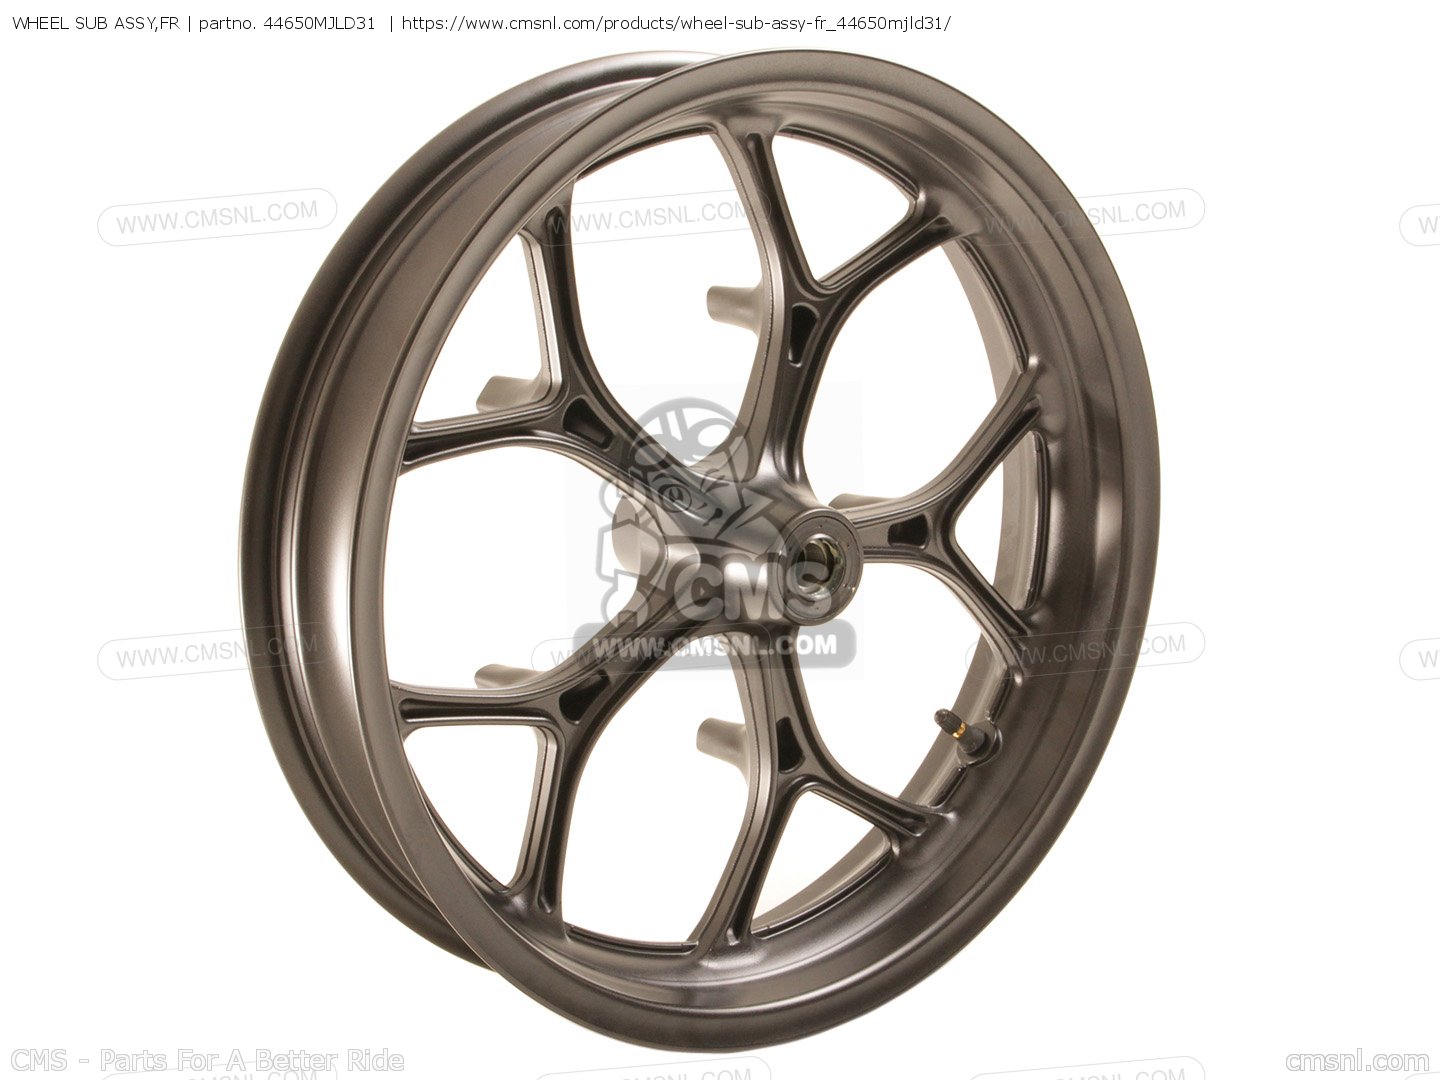 44650MJLD31: Wheel Sub Assy,fr Honda - buy the 44650-MJL-D31 at CMSNL